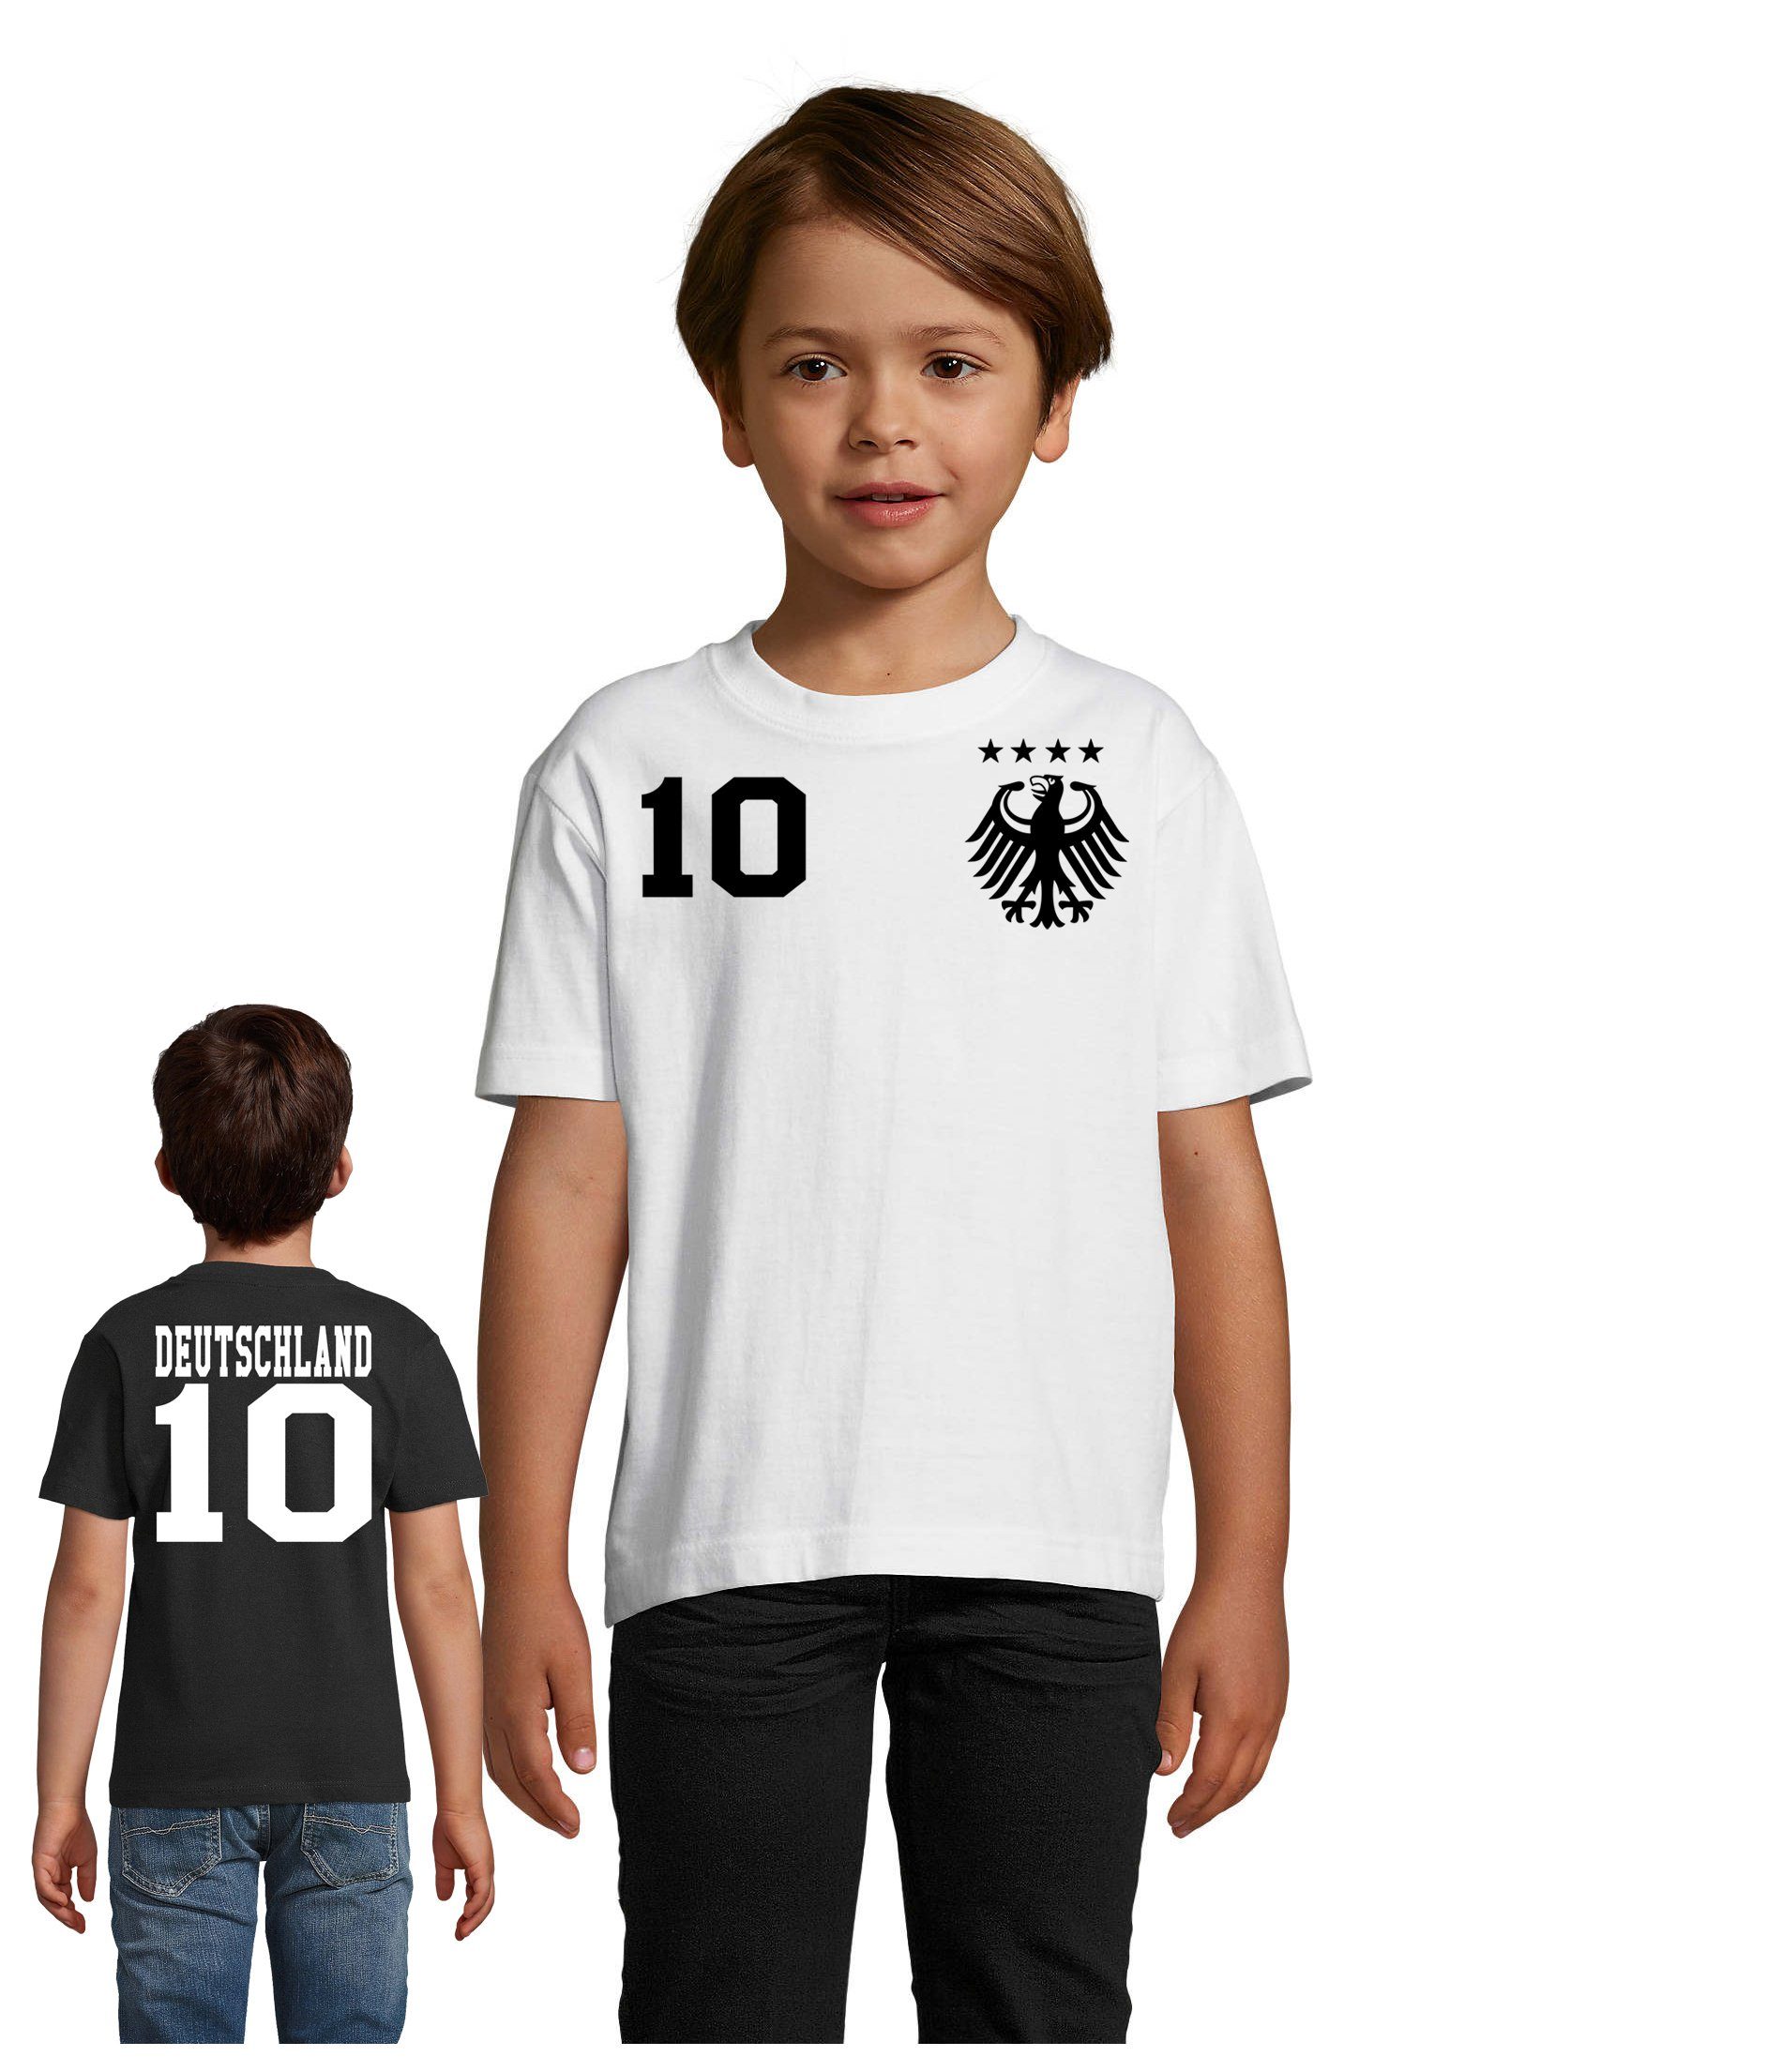 Blondie & Brownie T-Shirt Kinder Deutschland Germany Sport Trikot Fußball Meister EM Schwarz/Weiss